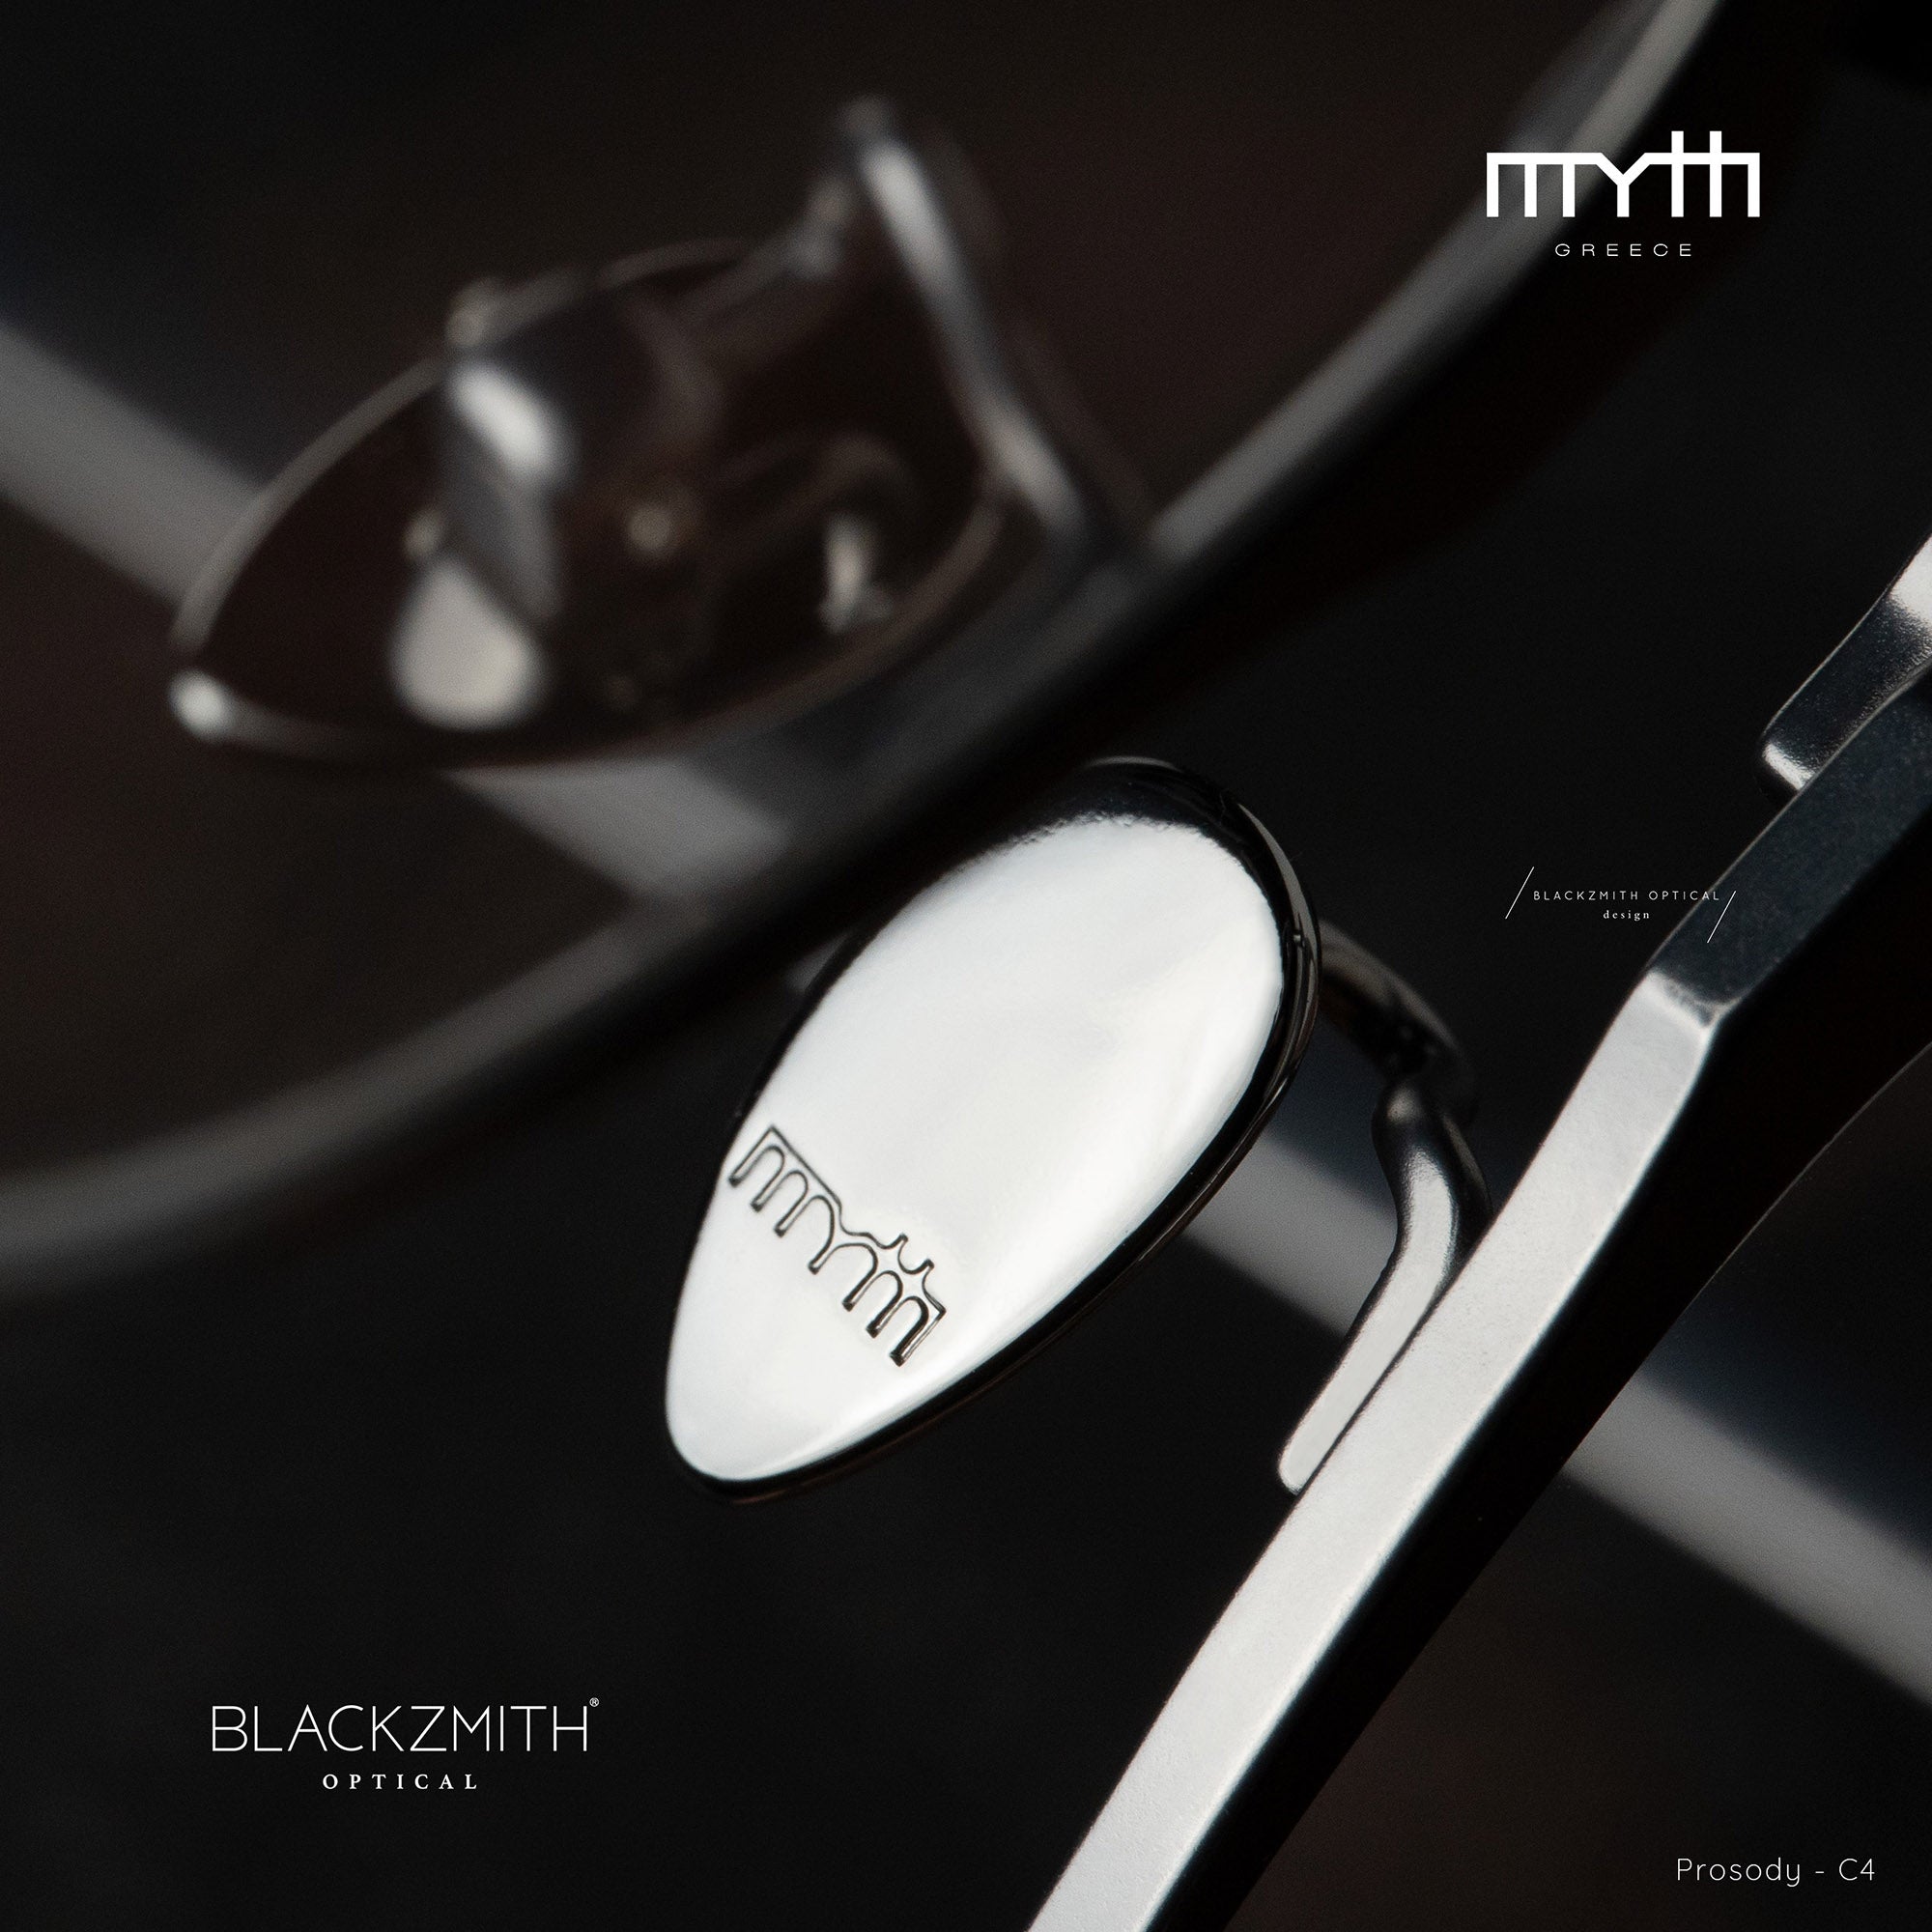 MYTH - MO2013 Prosody C4【New】